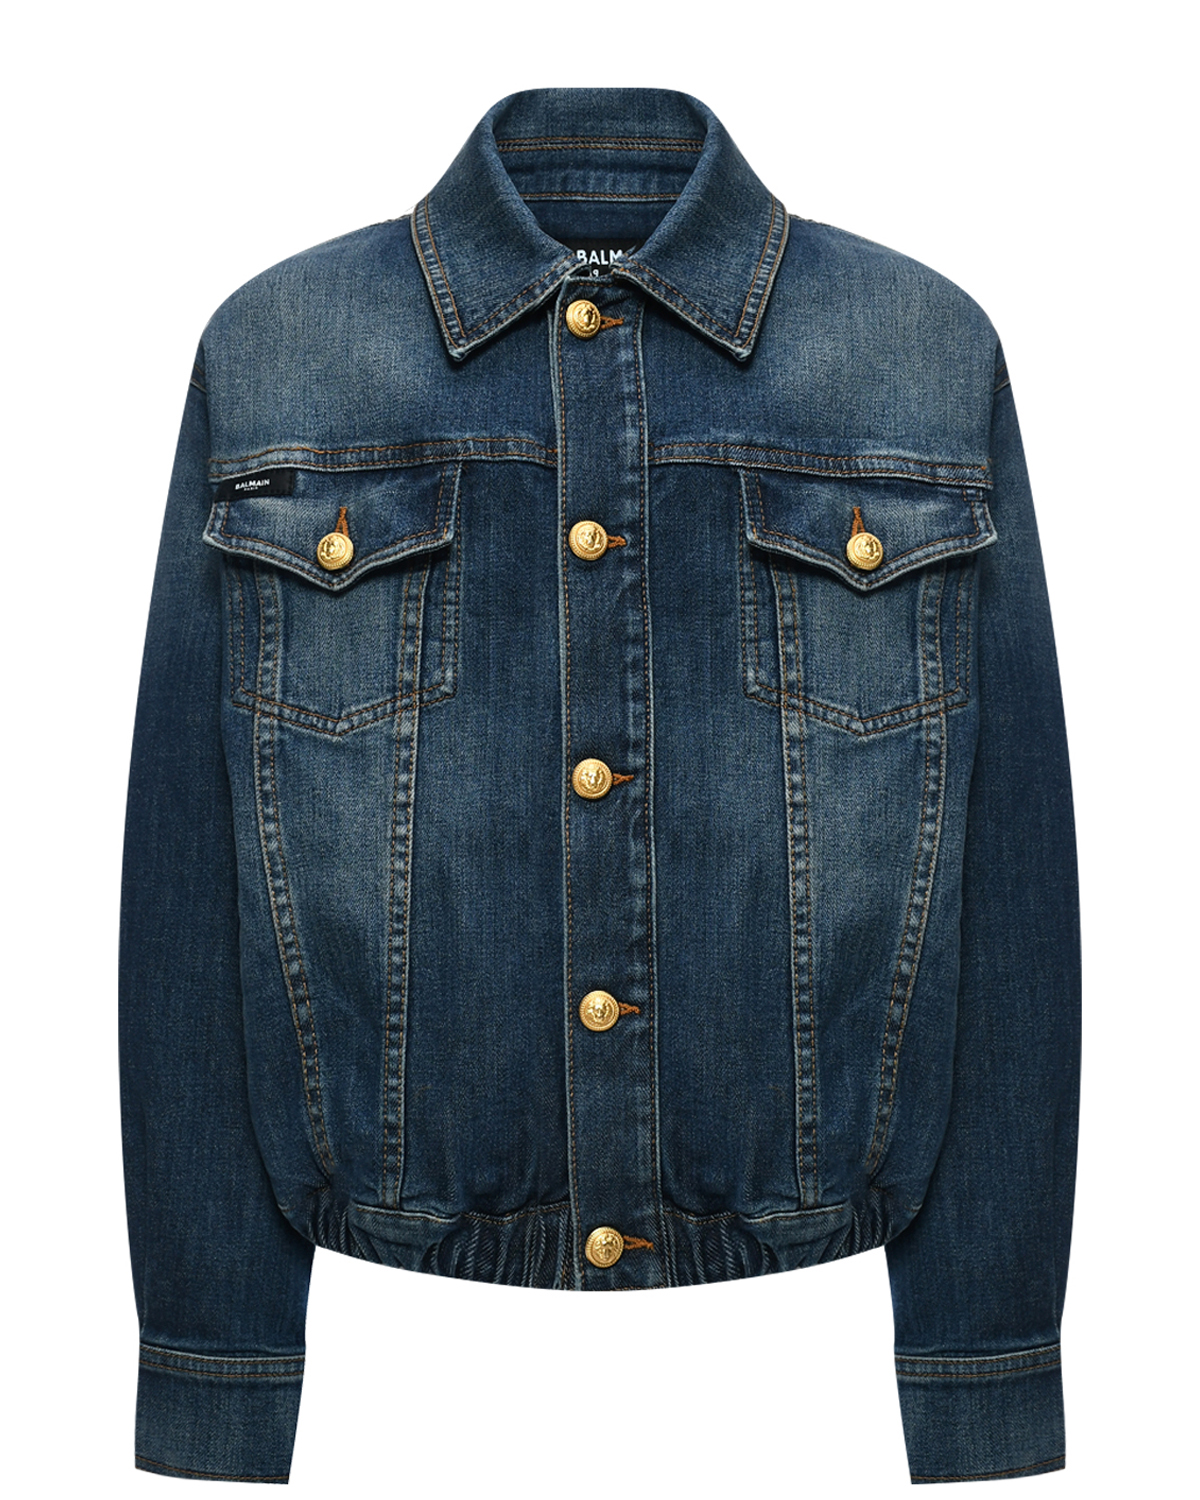 Выбеленная джинсовая куртка, синяя Balmain, размер 164, цвет синий